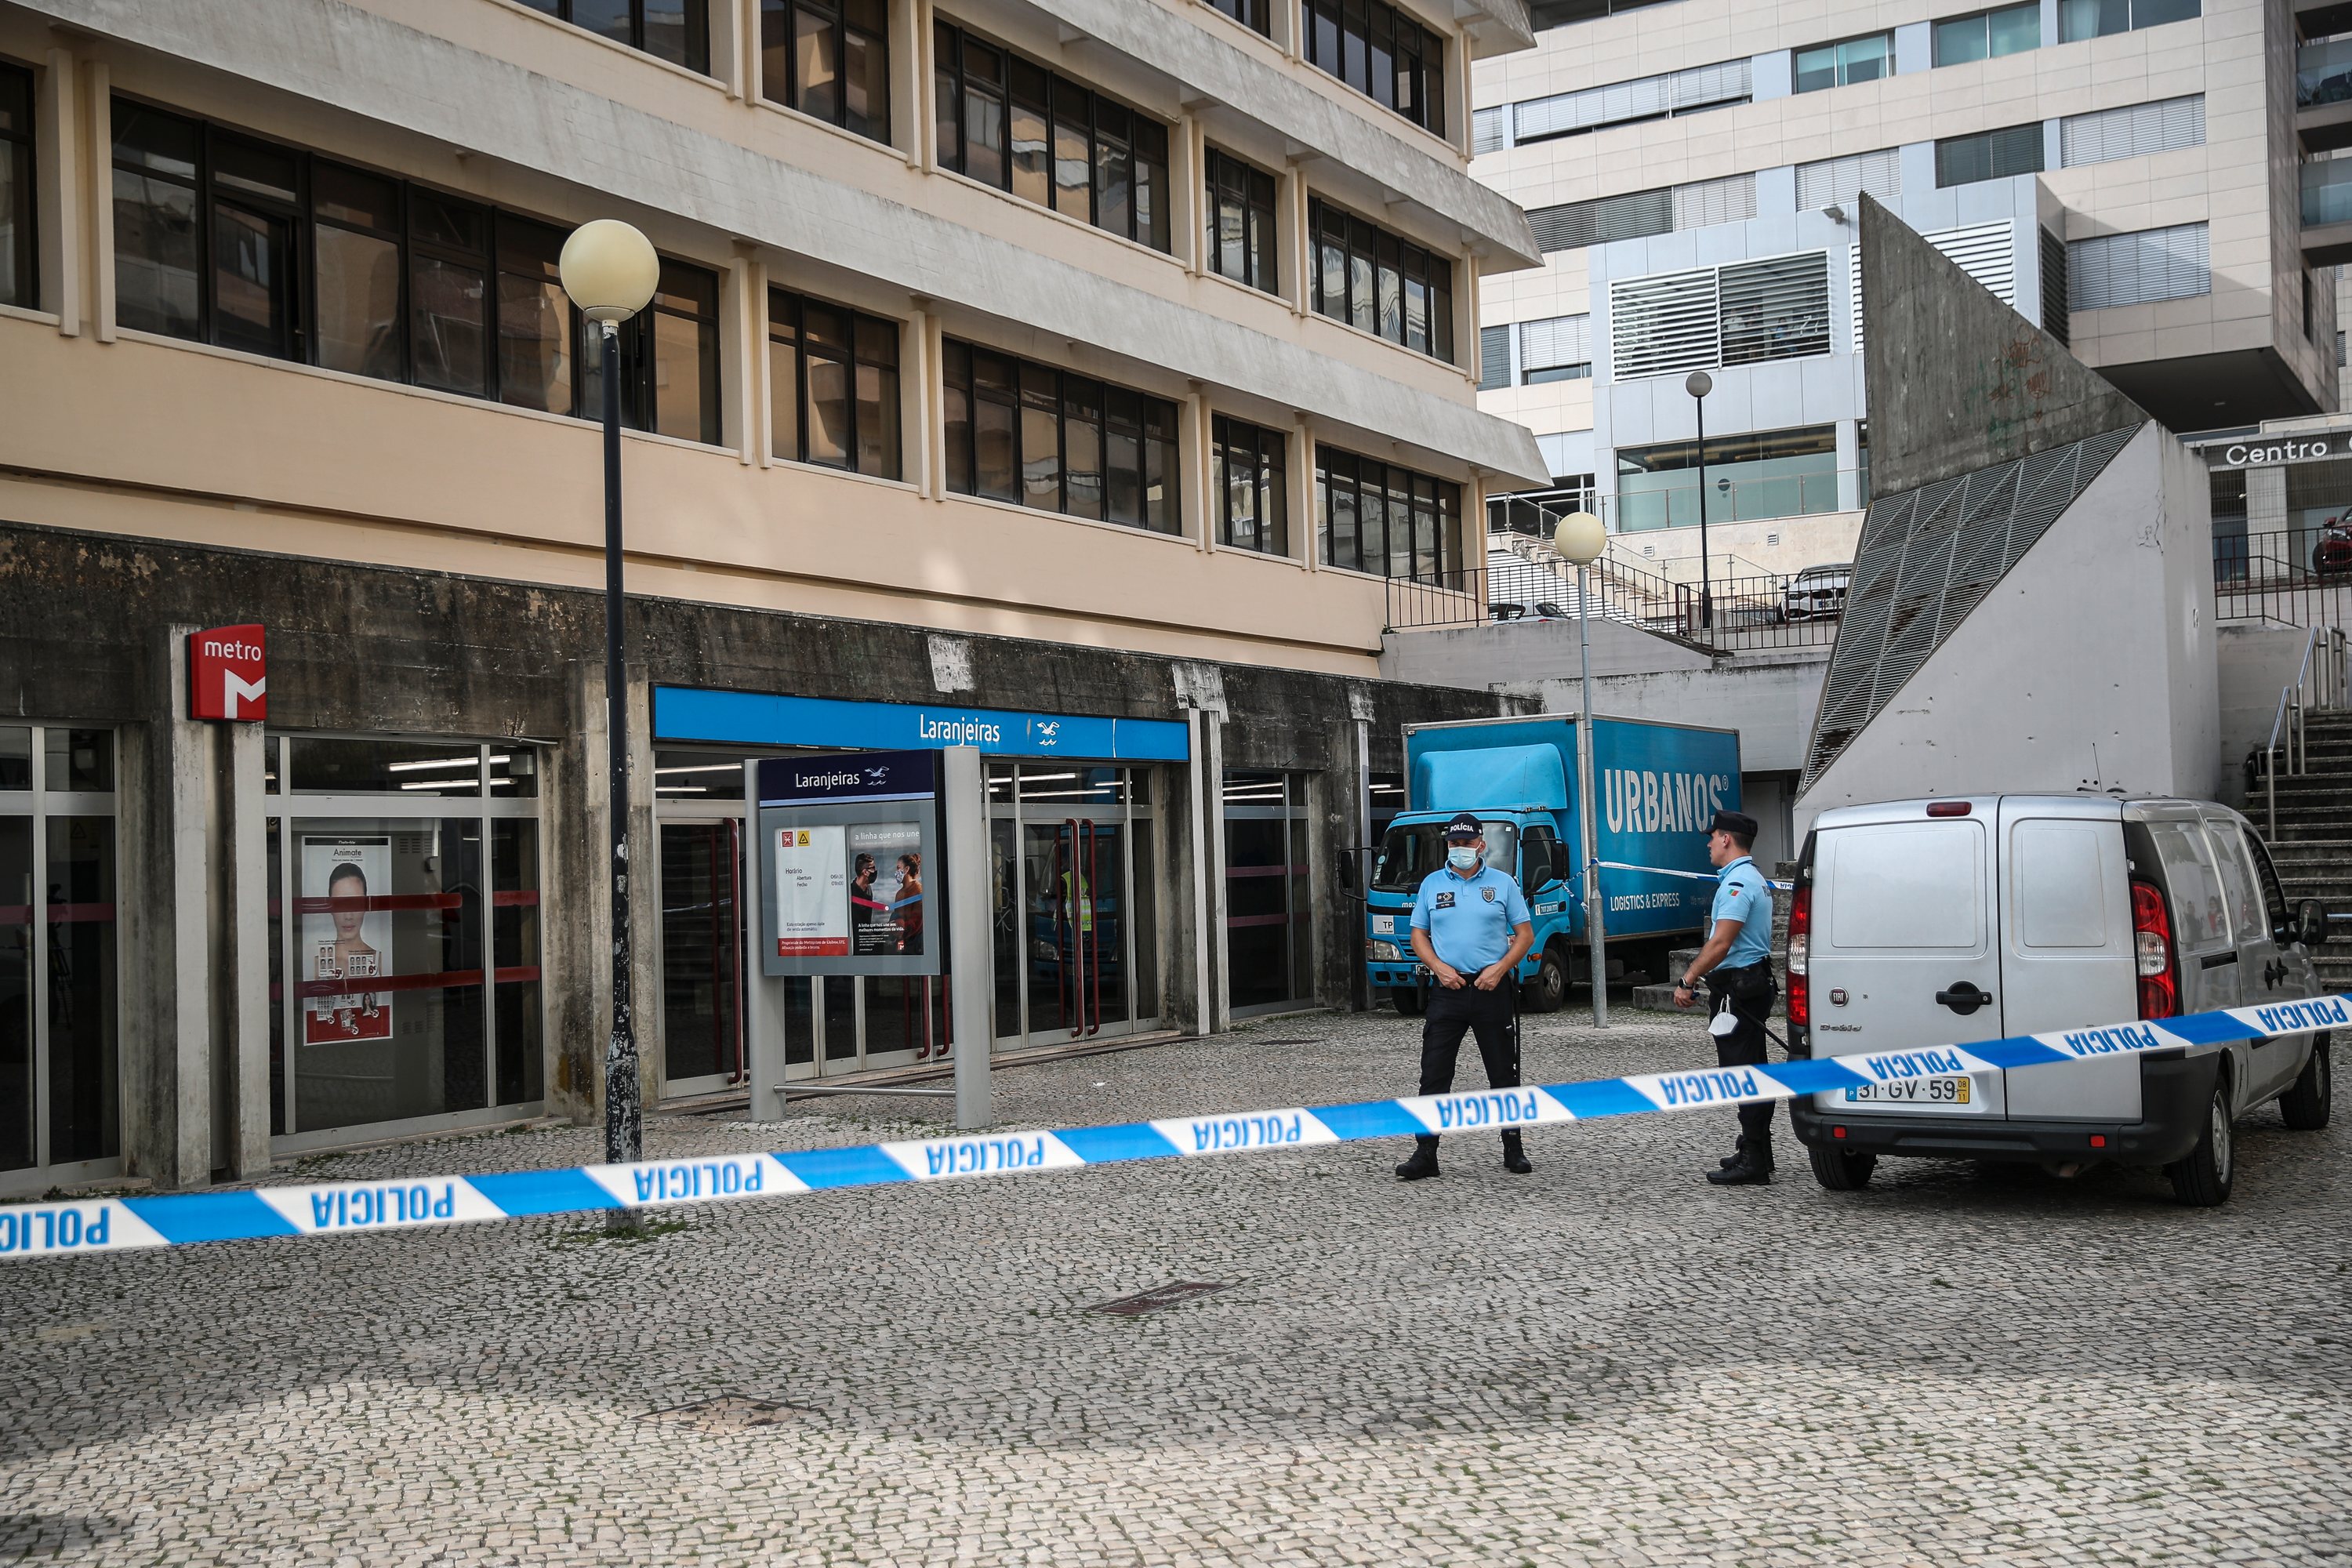 Homicídio de jovem no metro nas Laranjeiras. Lisboa, 20 de Outubro de 2021. FILIPE AMORIM/OBSERVADOR